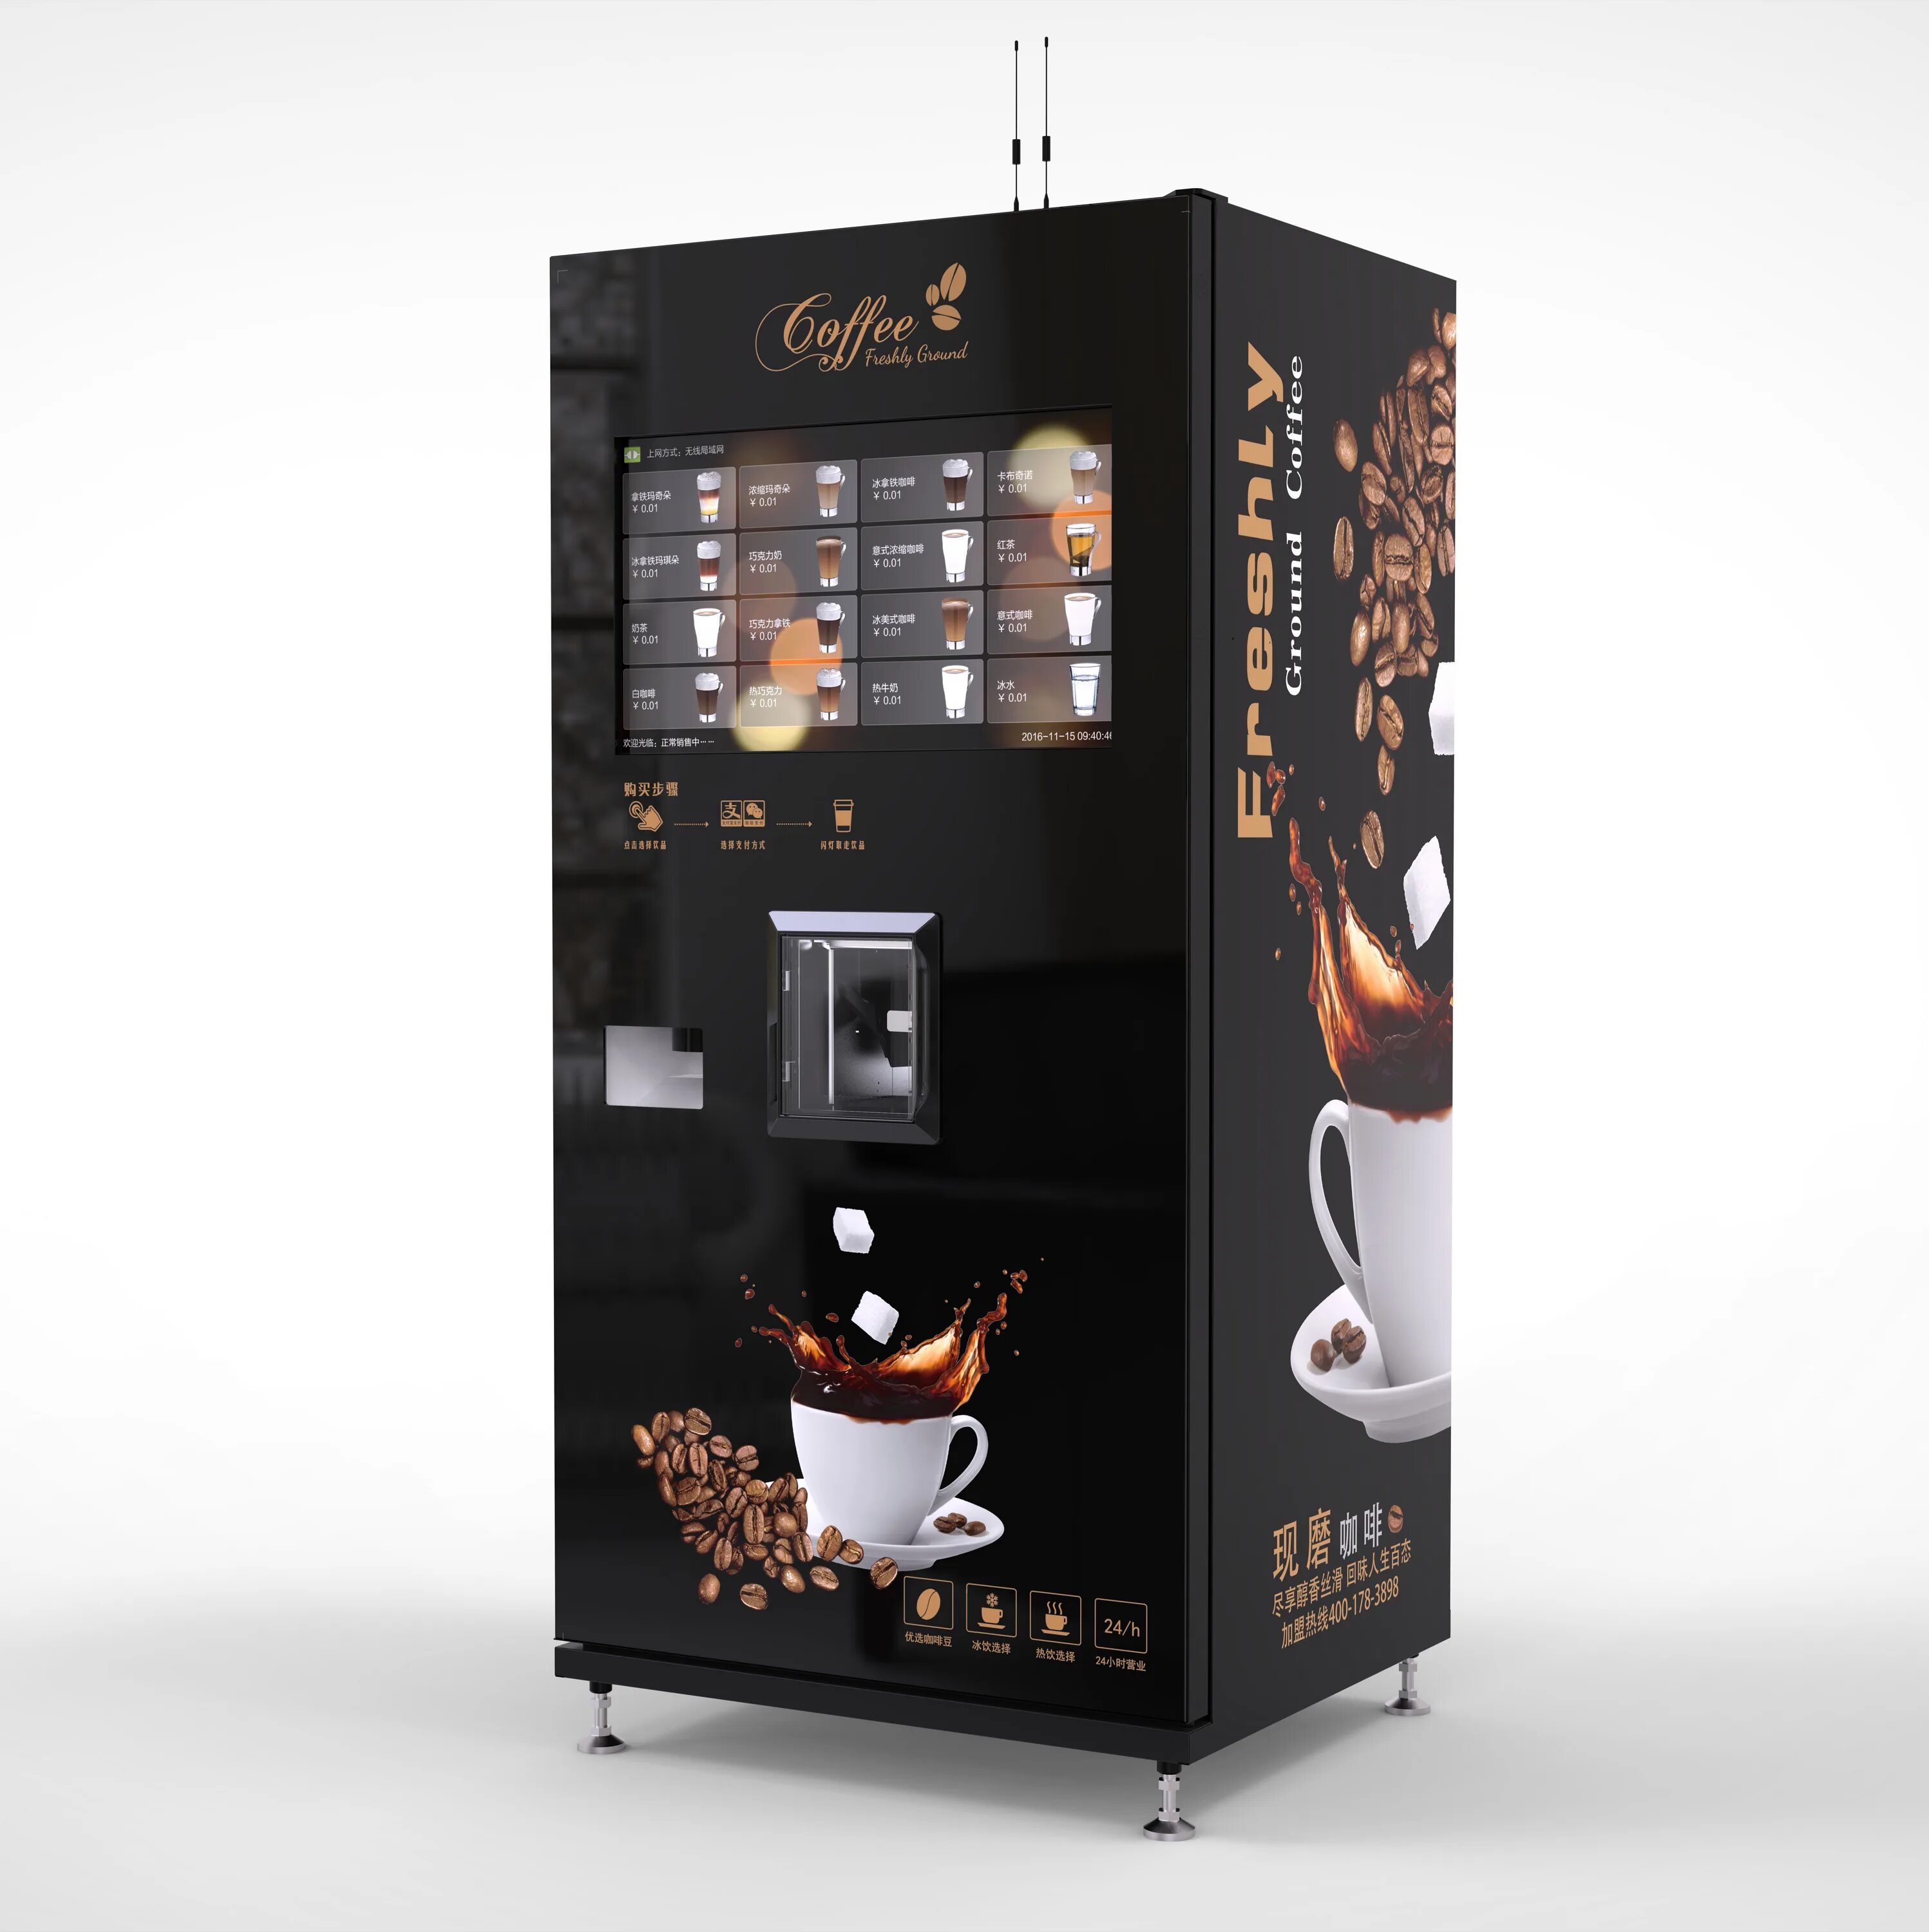 Купить кофе автоматы для бизнеса. Кофейный автомат Saeco Oasi 400. Кофейный торговый автомат Saeco Atlante 500 1 кофемолка. Вендинговые аппараты Necta. Вендинговый аппарат Саеко 400.